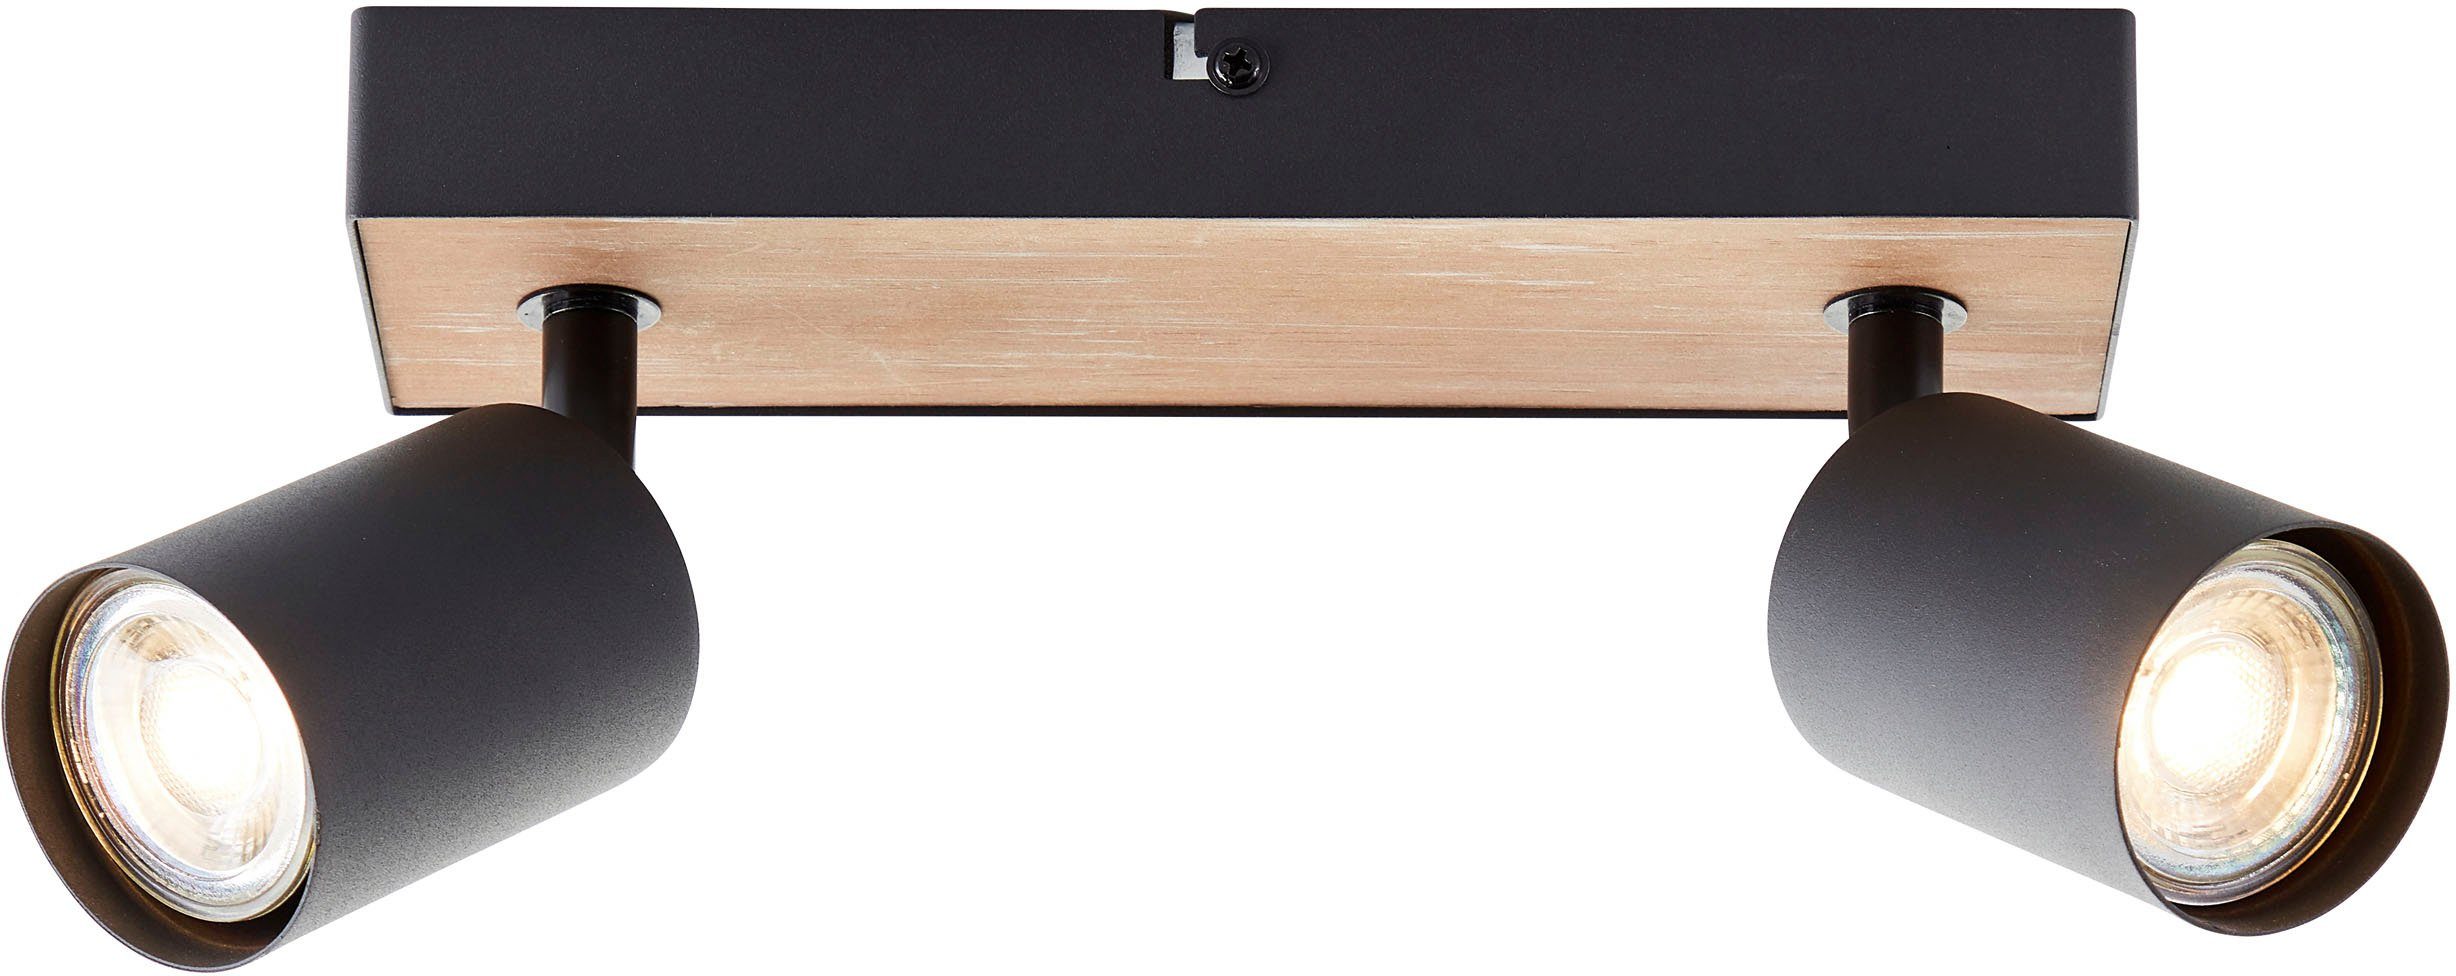 Brilliant Deckenstrahler Jello Wood, LED wechselbar, Warmweiß, Spotbalken  schwenkbar, 15x24x8 cm, GU10, 345lm, 3000K, Metall/Holz | Deckenstrahler